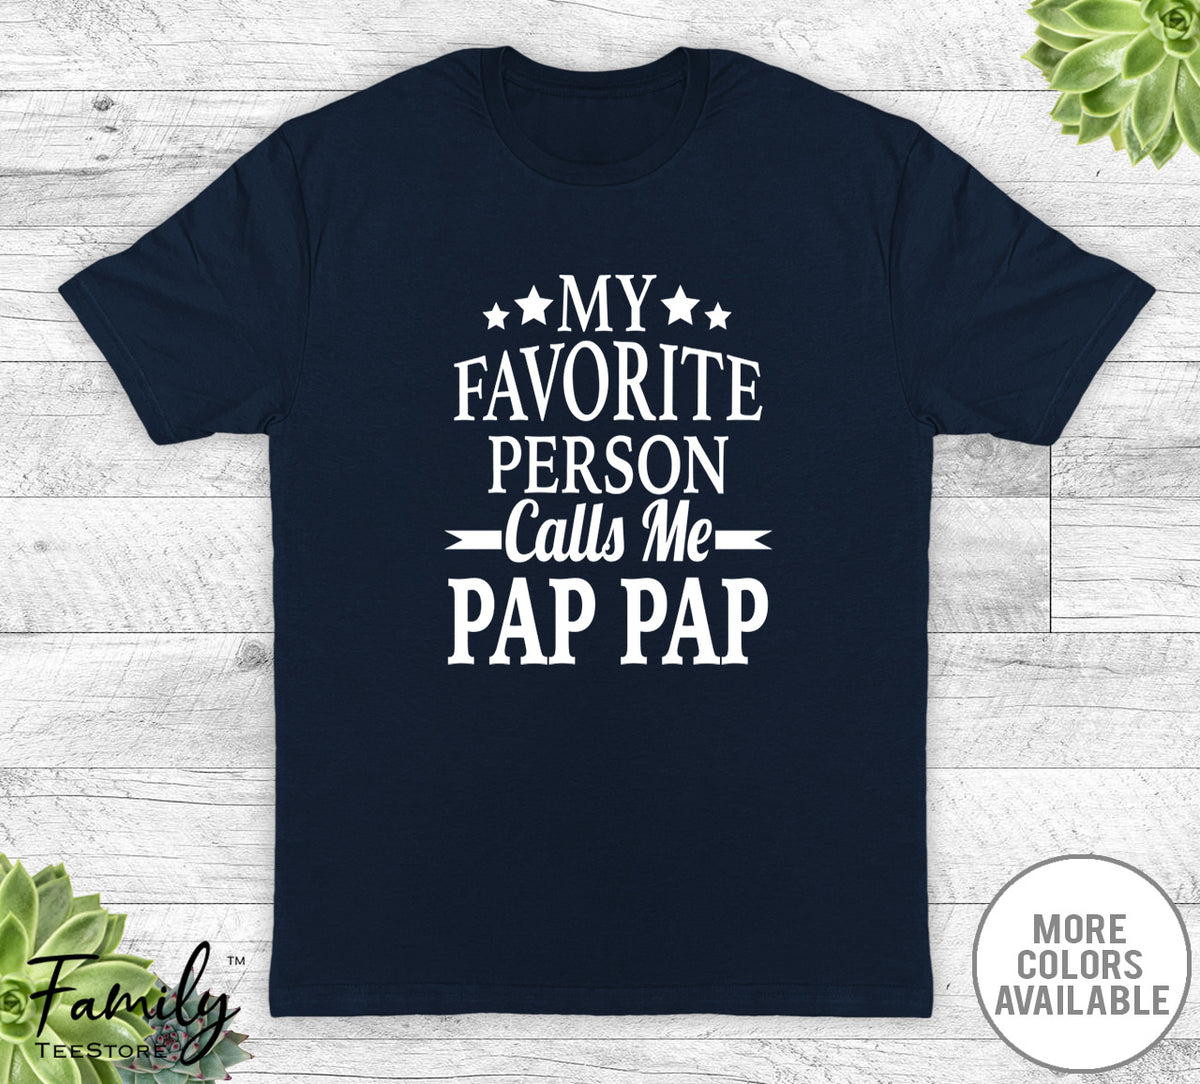 My Favorite Person Calls Me Pap Pap - Unisex T-shirt - Pap Pap Shirt - New Pap Pap Gift - familyteeprints